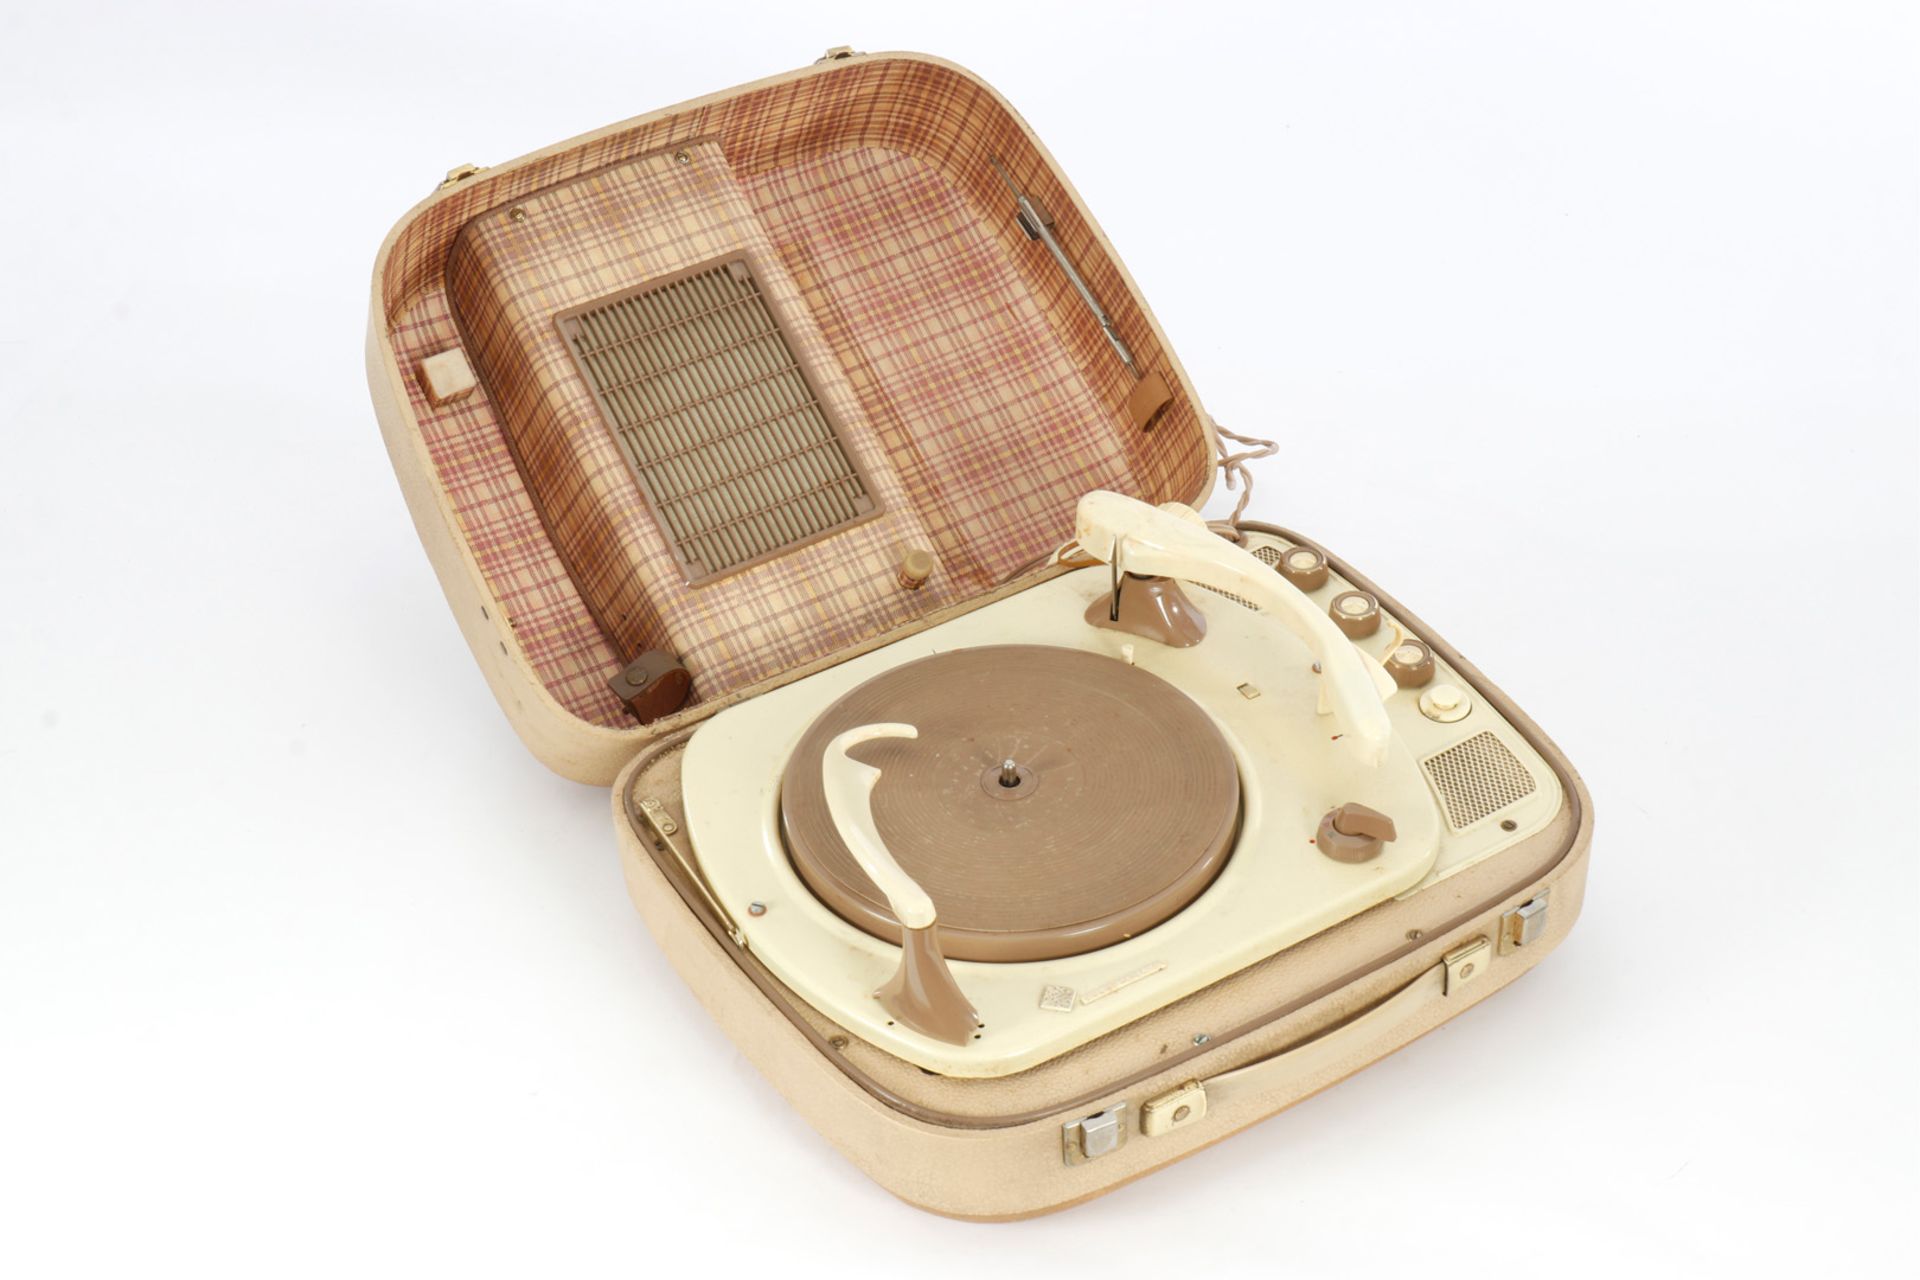 Telefunken Plattenspieler mit Plattenwechsler, im Koffer, 60er Jahre, Lautsprecherabdeckung defekt, 